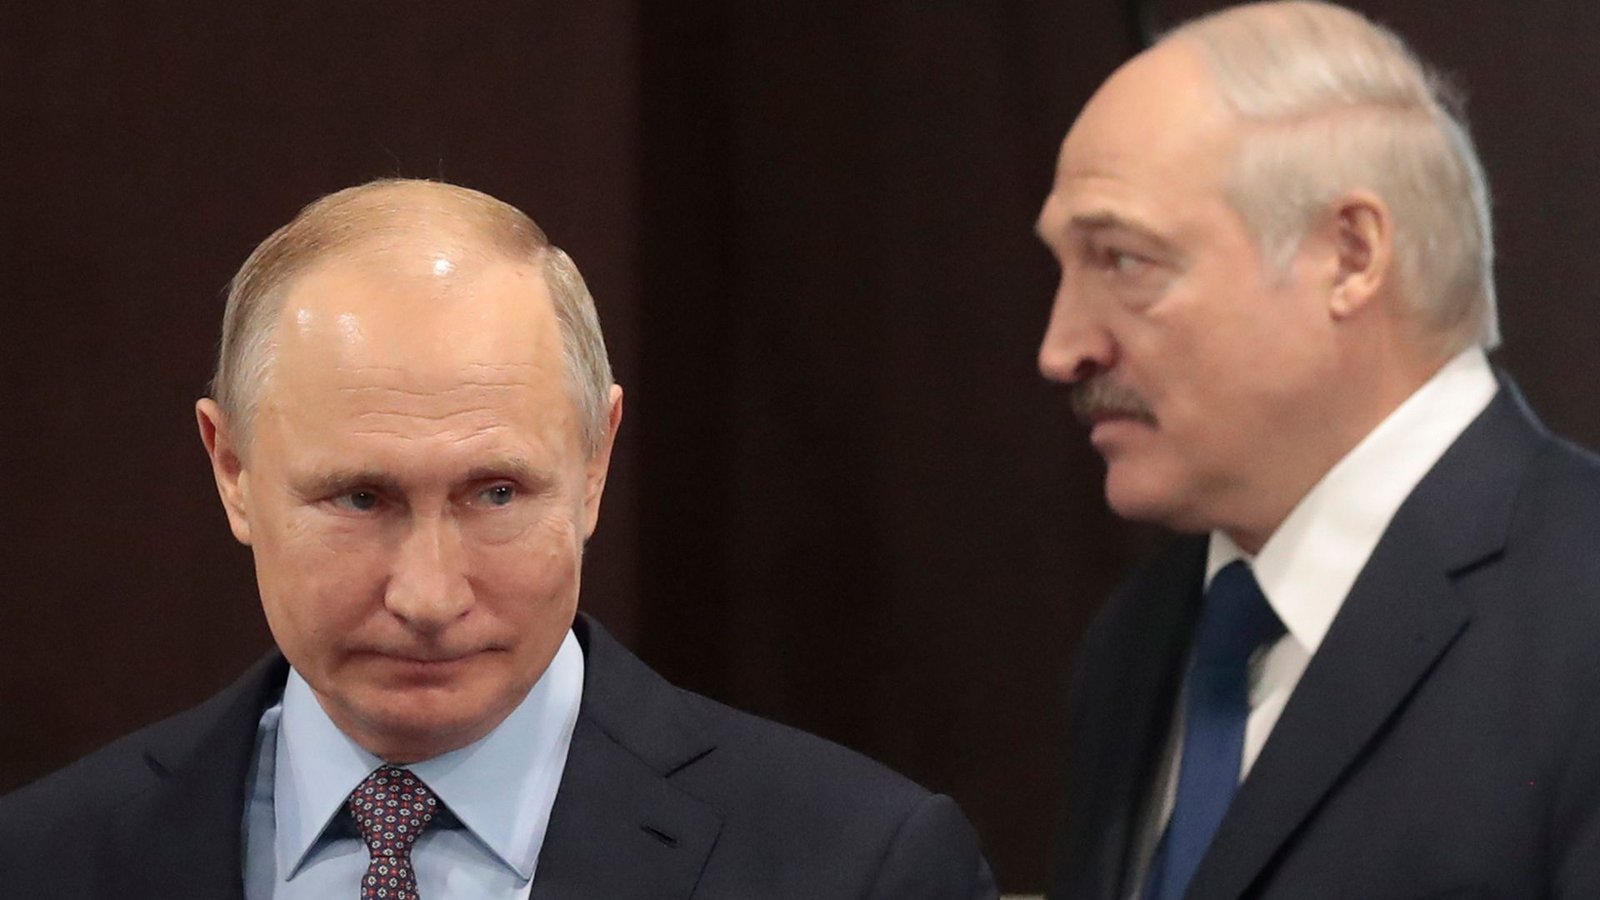 Kremlchef Wladimir Putin (r) und der belarussische Machthaber Alexander Lukashenko.Foto: Sergei Chirikov/POOL EPA/AP/dpa